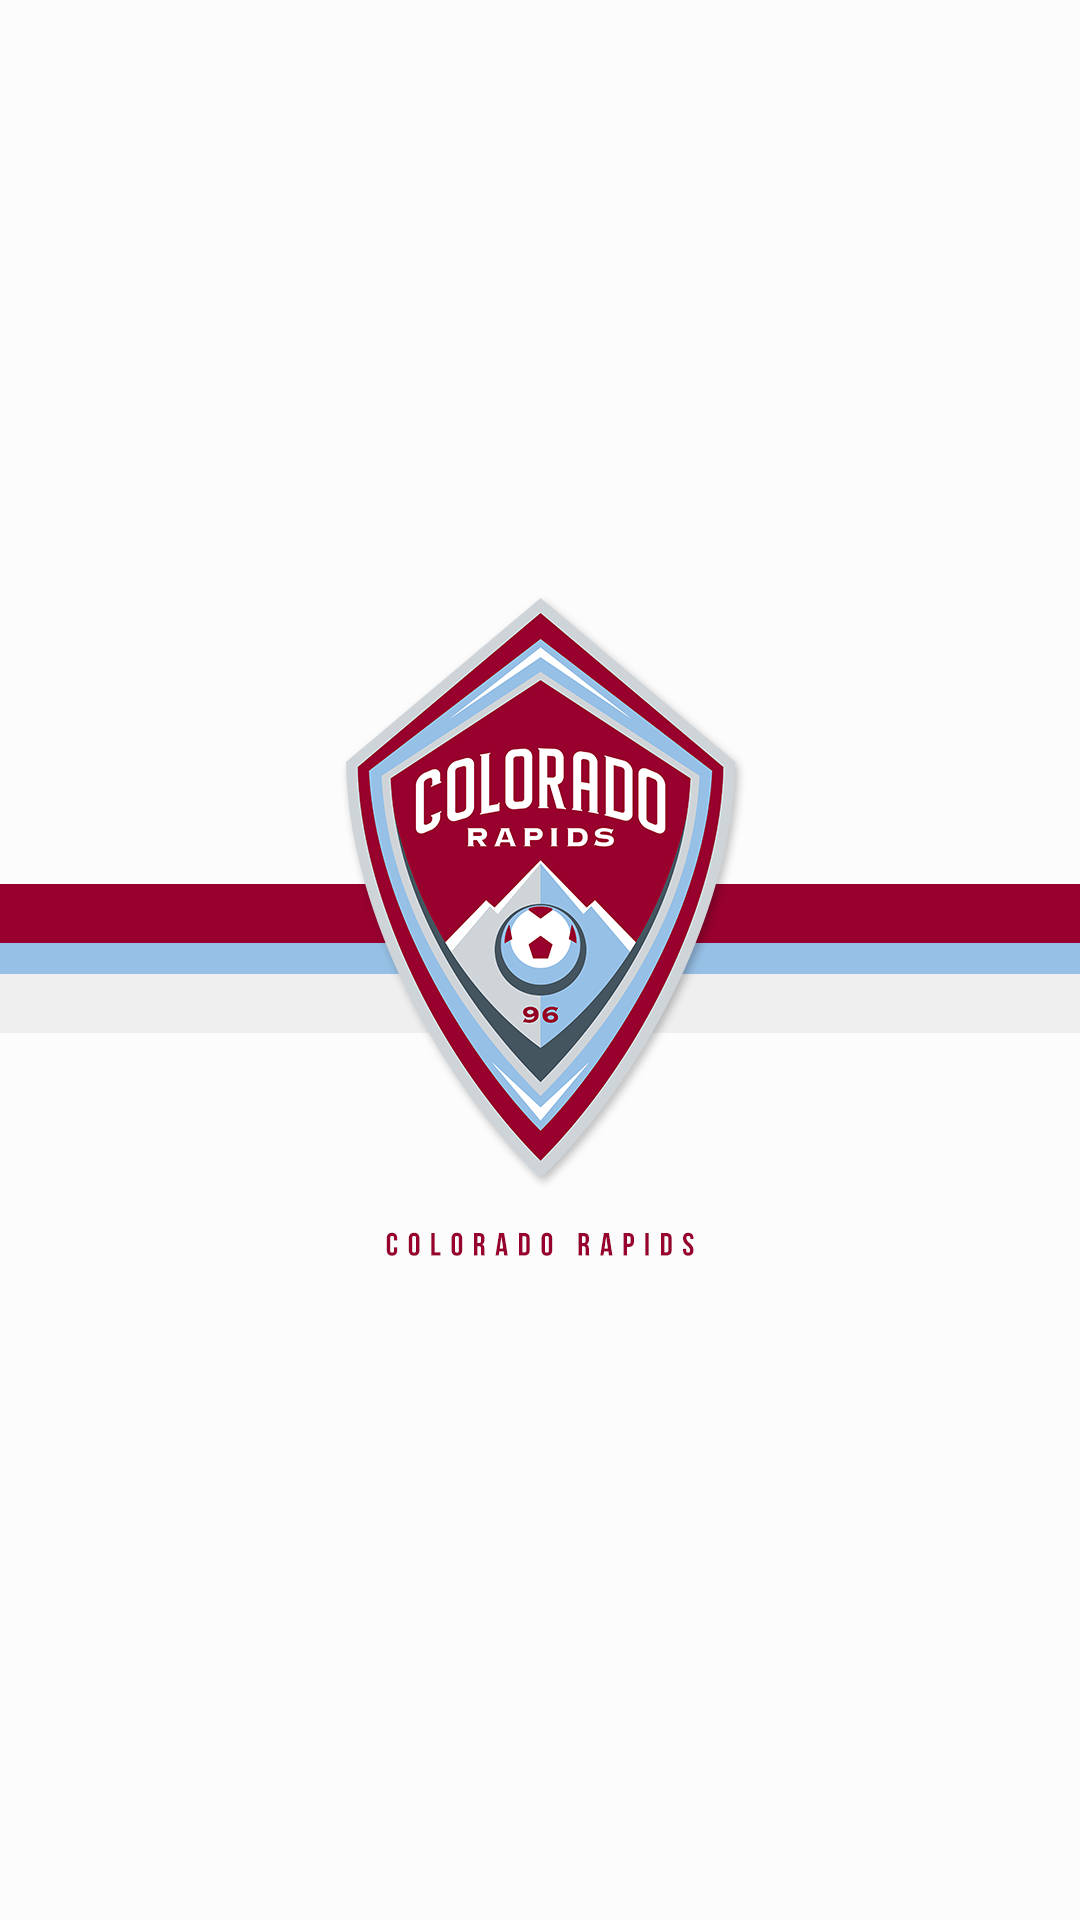 Papelde Parede Simples Do Logotipo Do Colorado Rapids. Papel de Parede